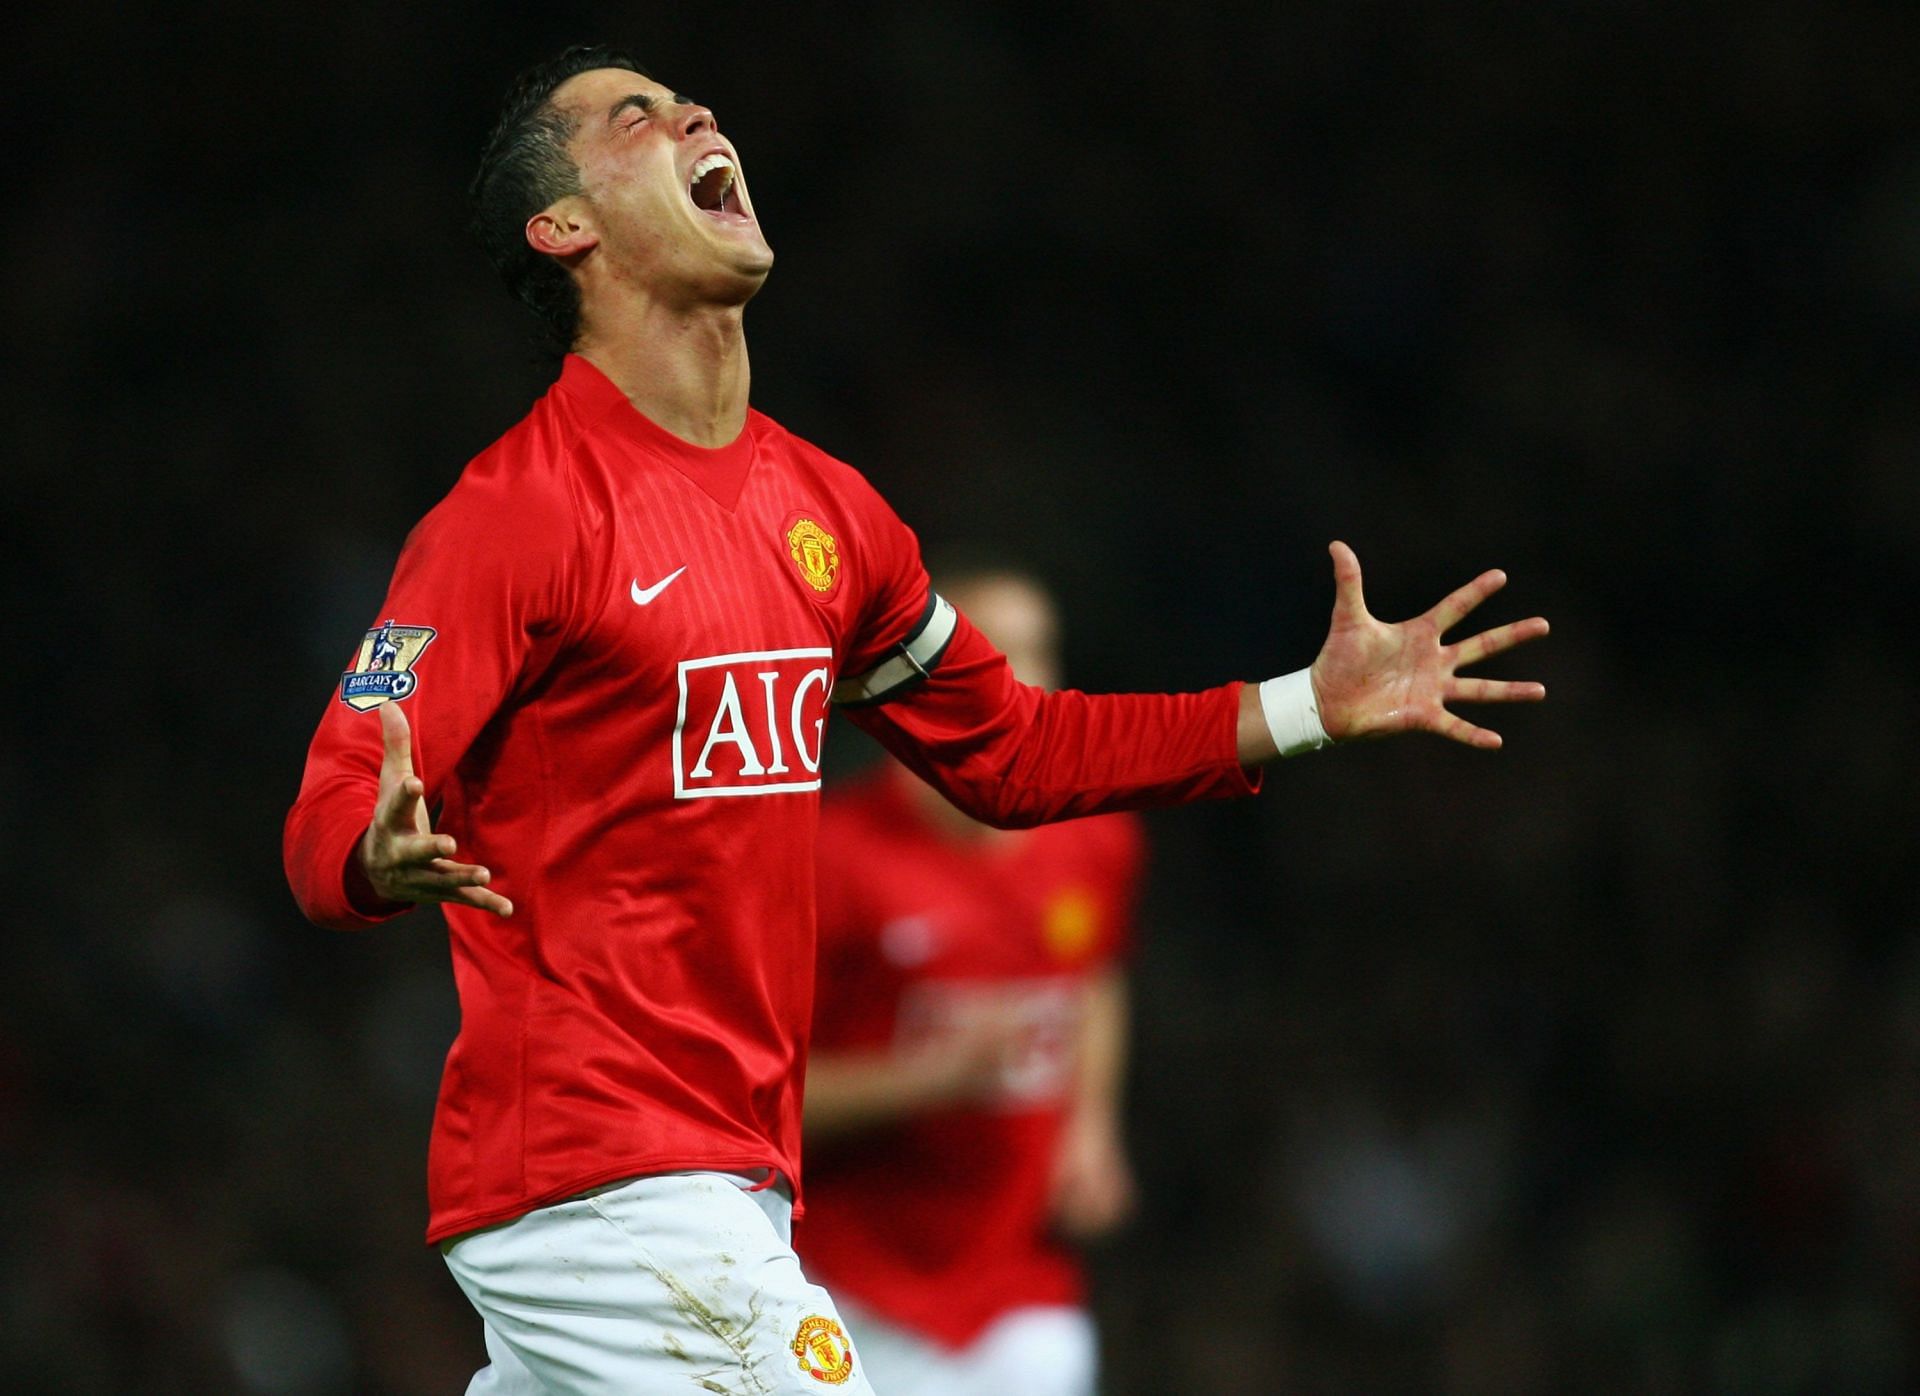 Cristiano Ronaldo had a dream campaign with Manchester United in 2007-08.